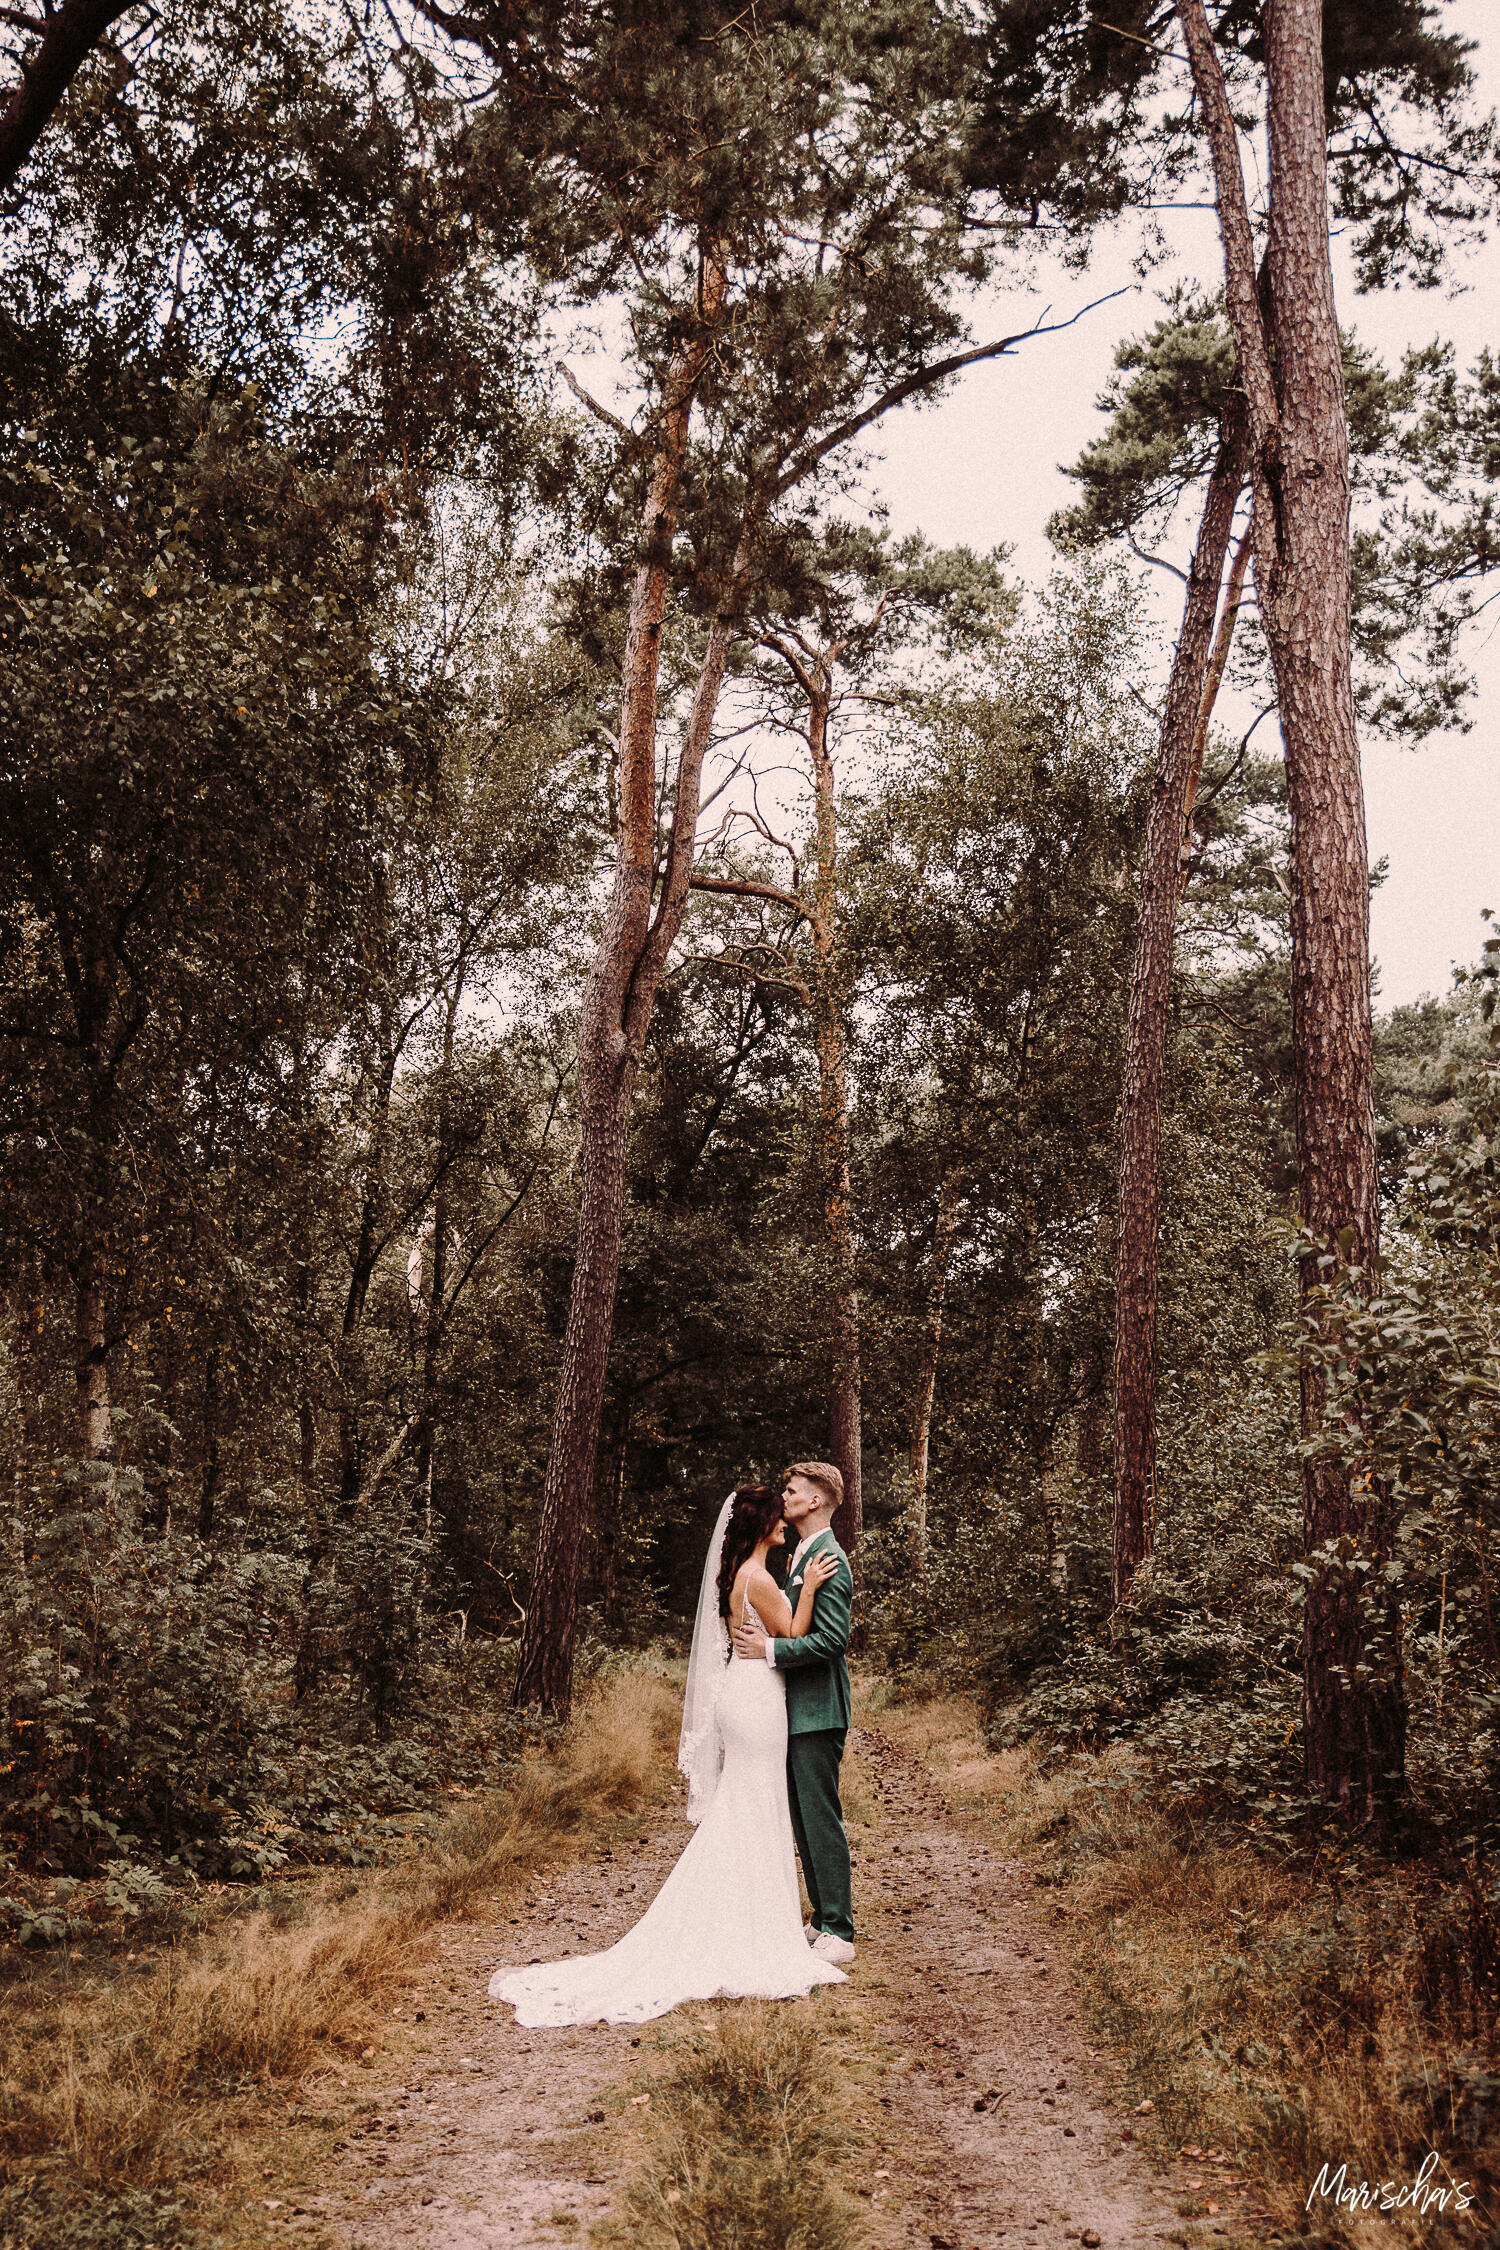 Bruidsfotograaf eindhoven voor een bruiloft bij de kapellerput in Heeze